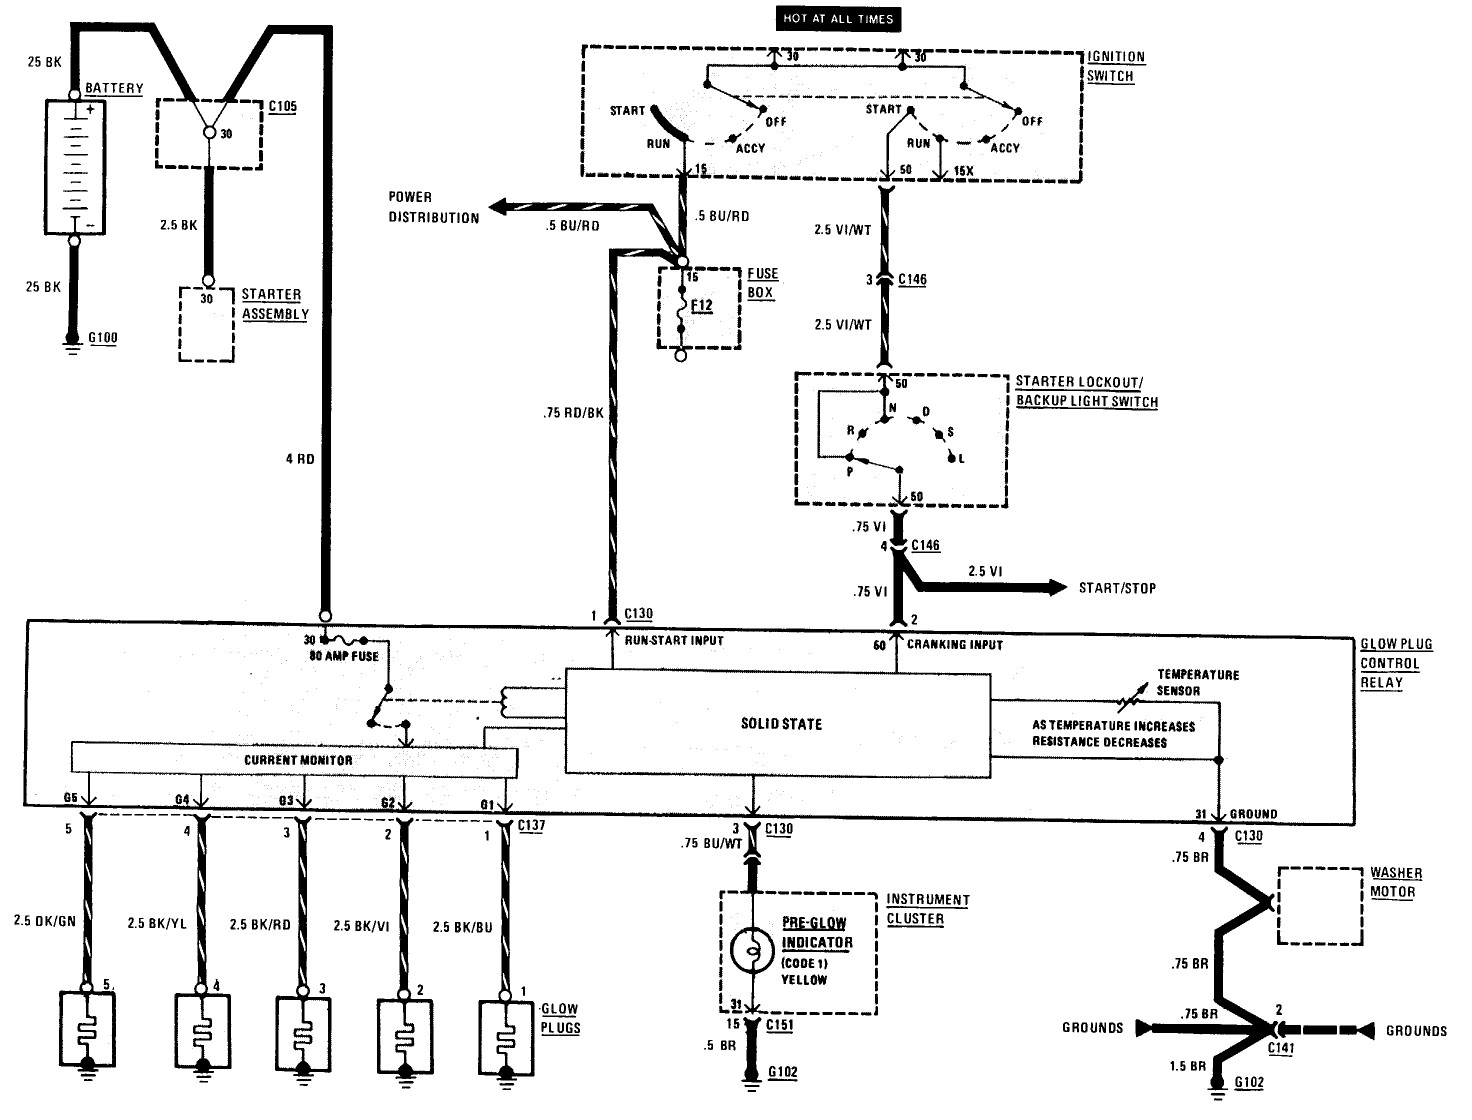 relay module wiring harness wiring diagram wiring schematics basic